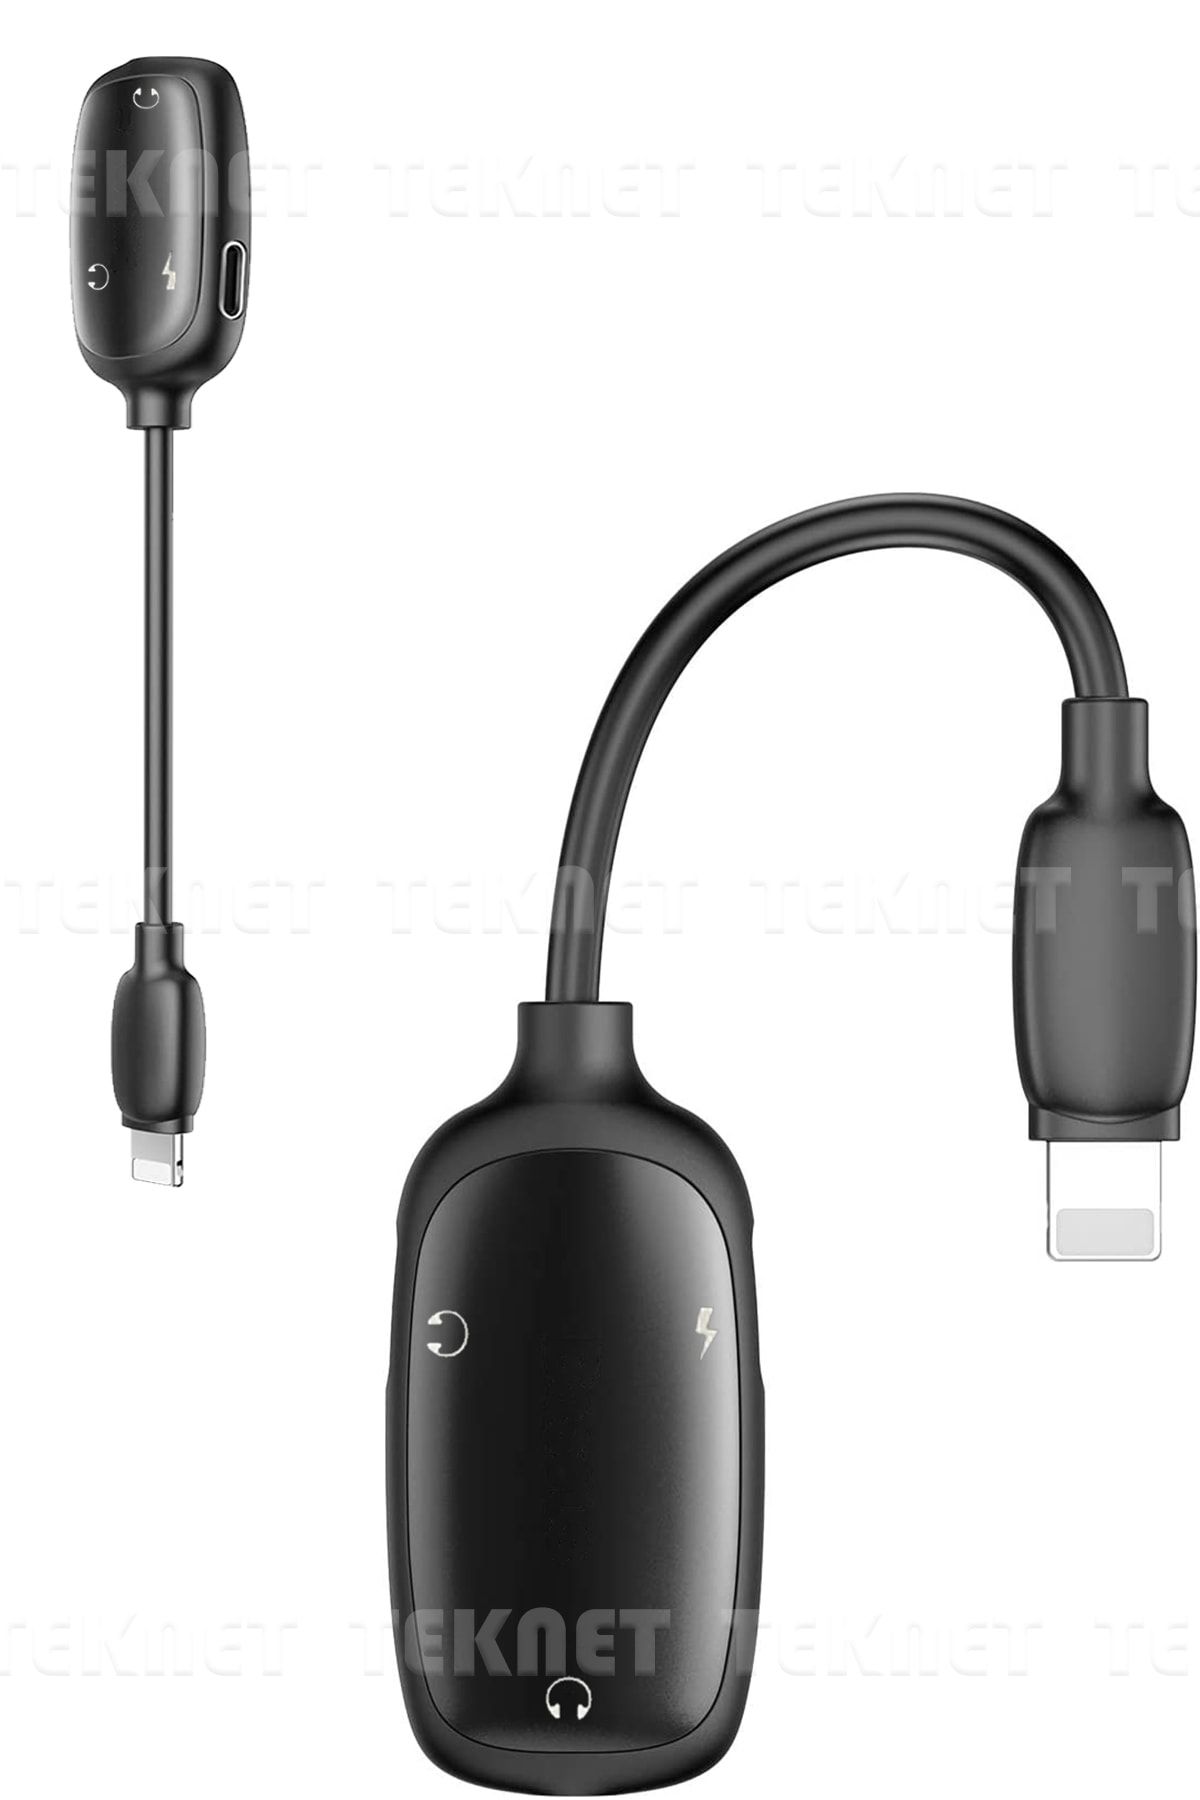 TEKNETSTORE 3 In 1 Lightning Iphone Şarj Kulaklık Ve 3.5 Mm Jack Kulaklık Dönüştürücü Dişi Adaptör Male To Dual